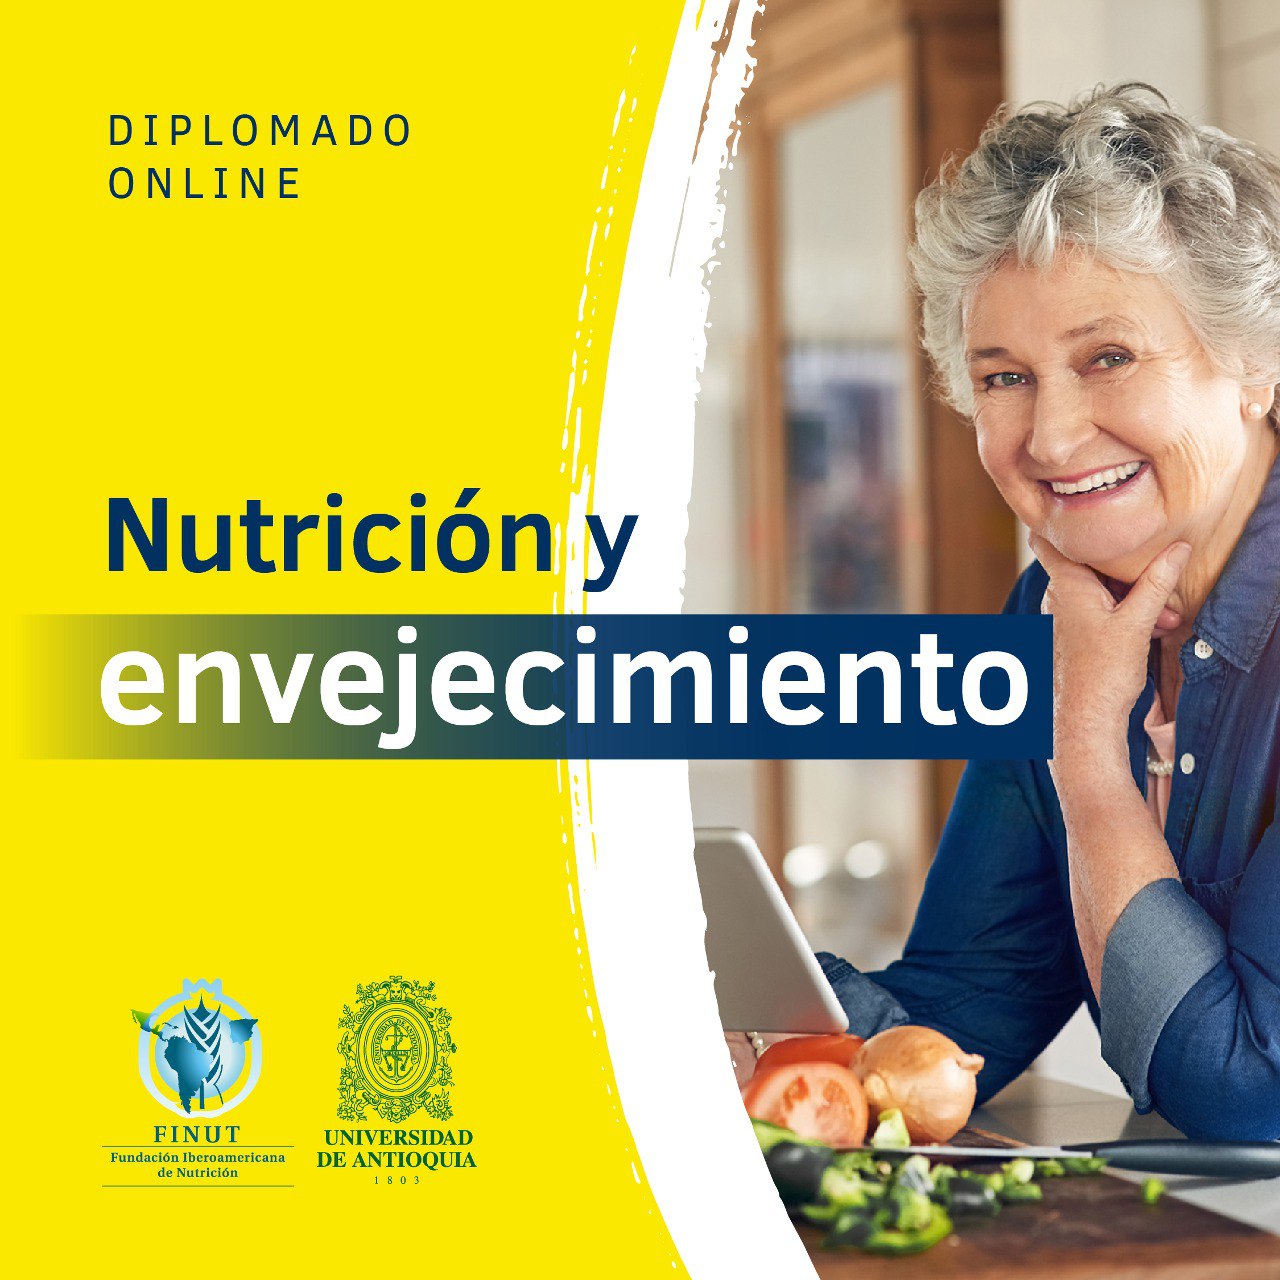 Diplomado Nutrición y envejecimiento